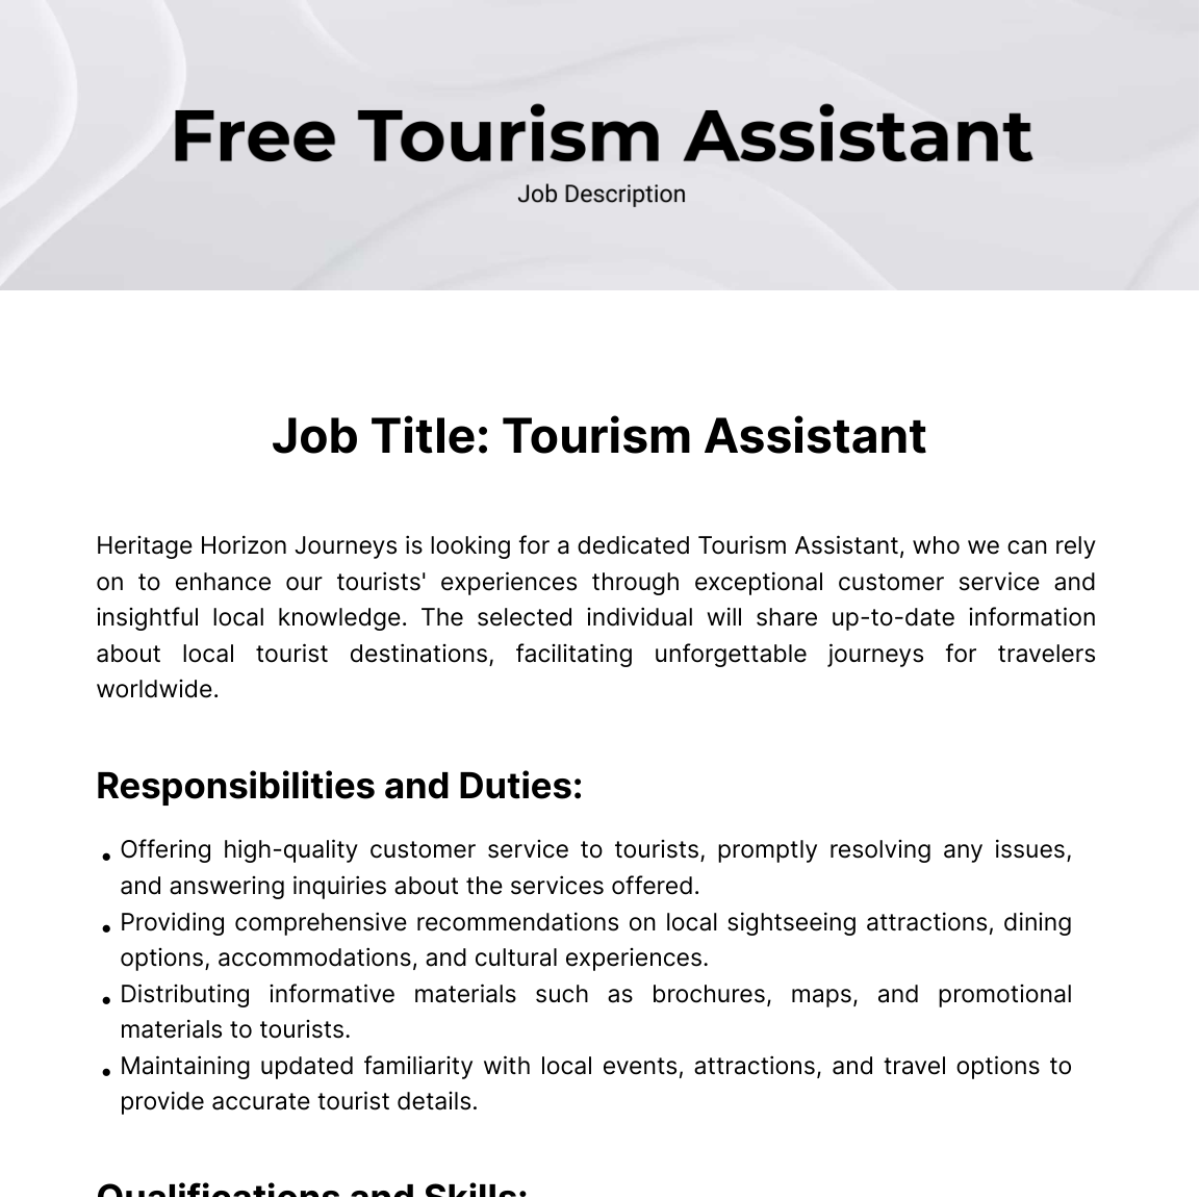 Free Tourism Assistant Job Description Template